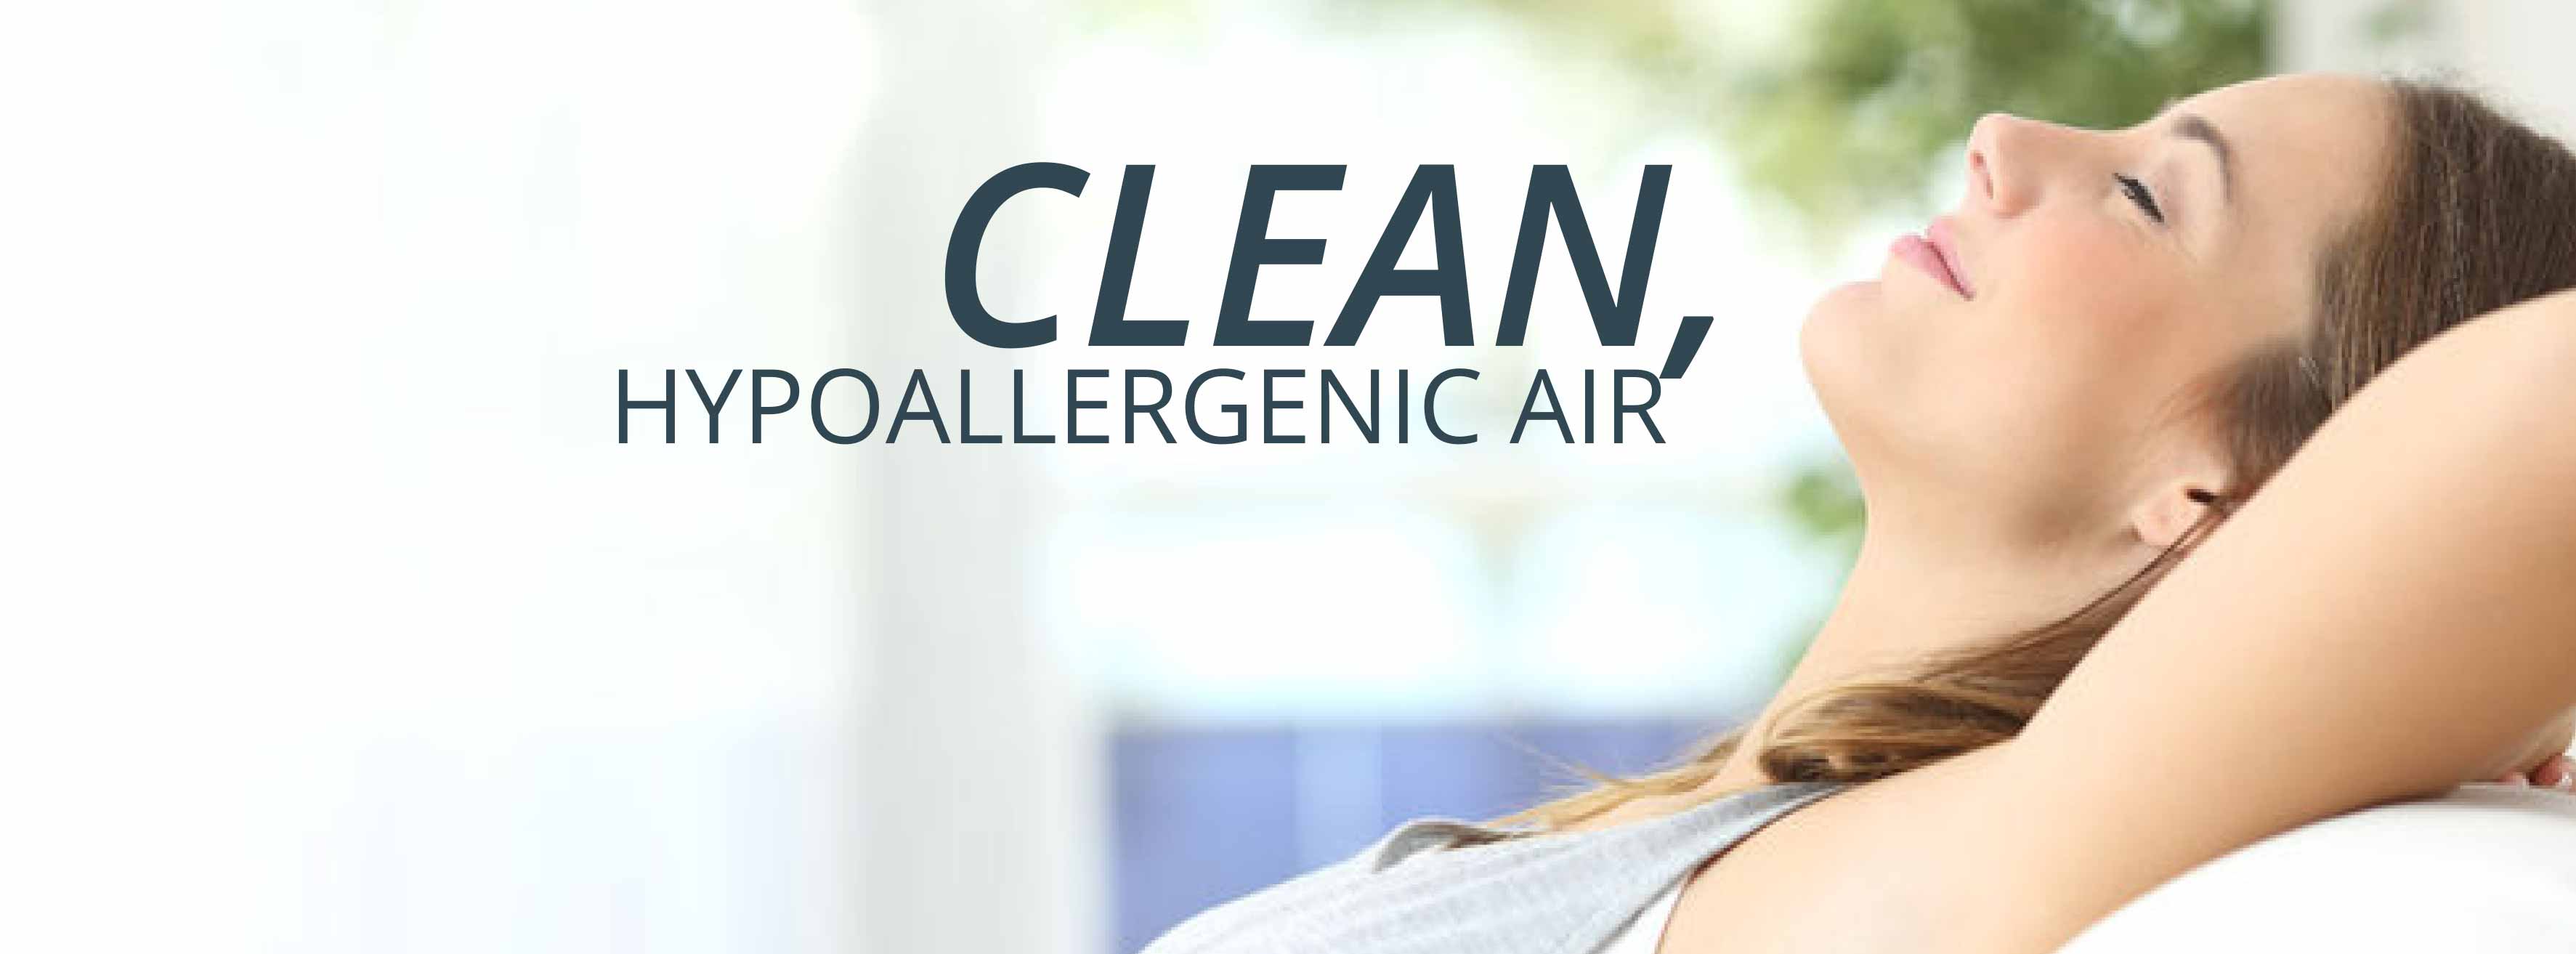 Clean Hypoallergenic Air